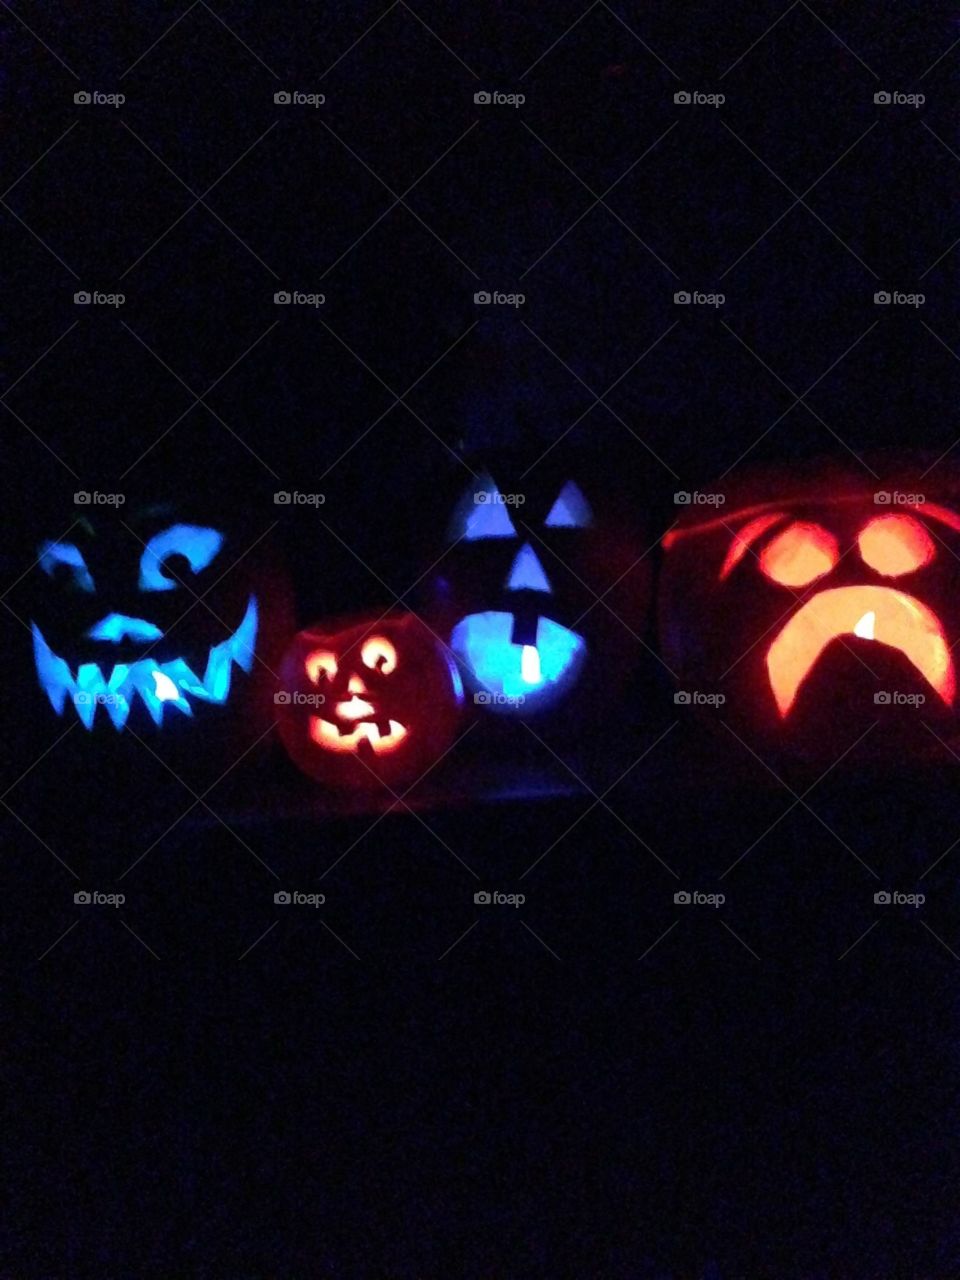 Carved glowing pumpkins!